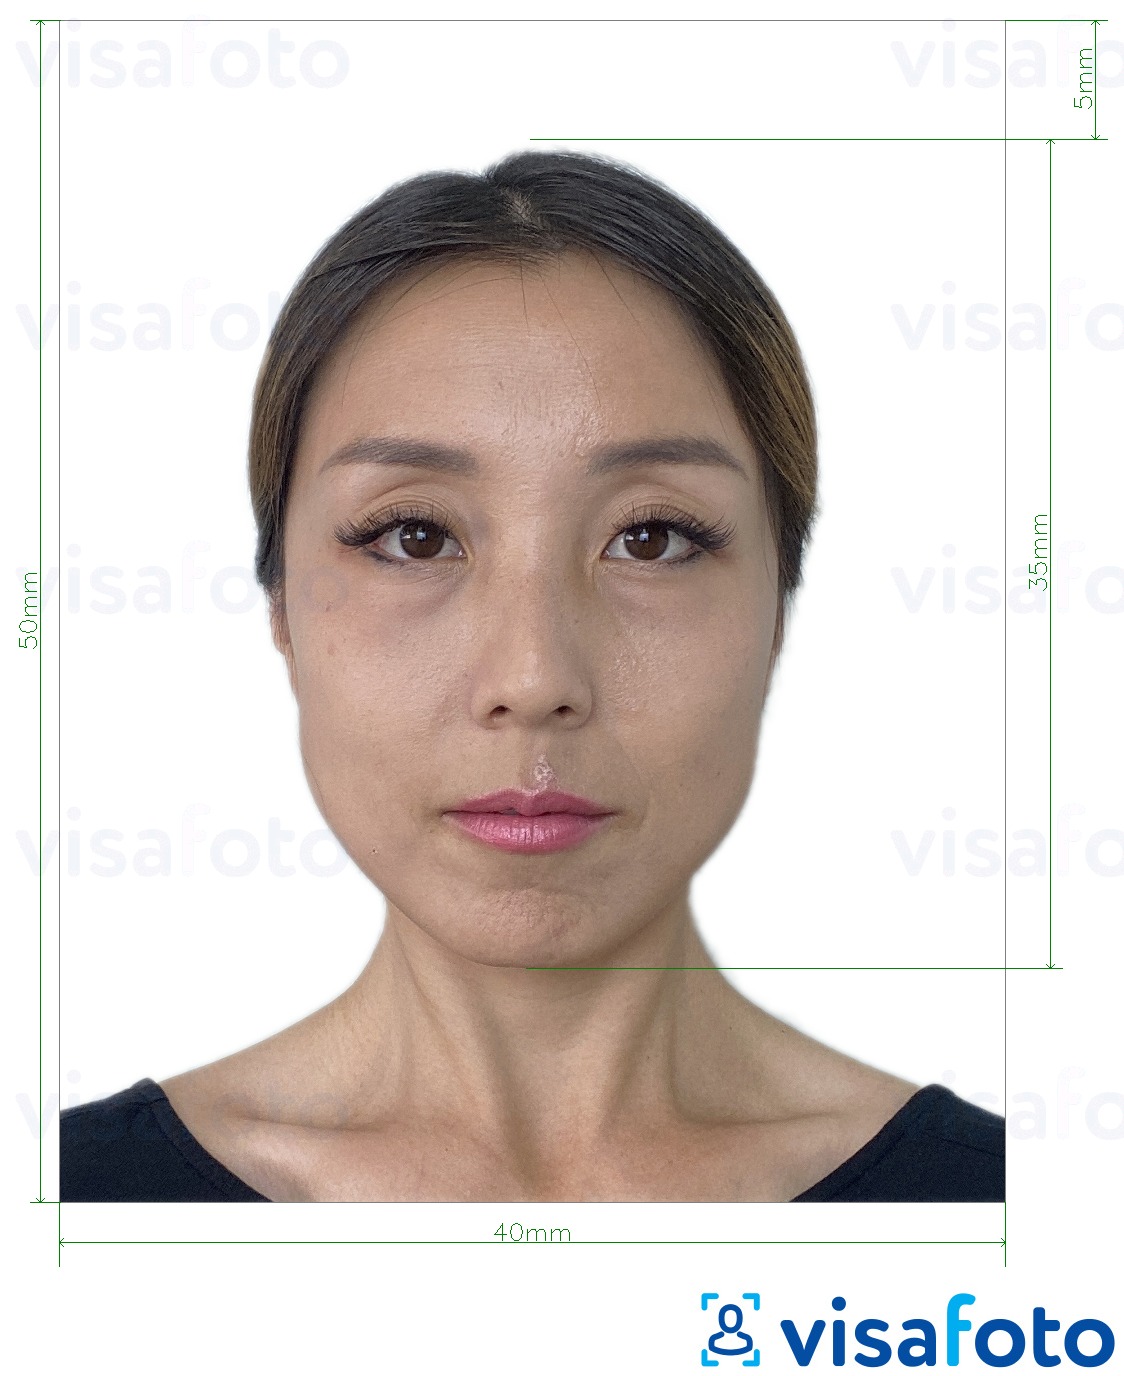 香港身份证 4x5 厘米 的标准尺寸照片示例